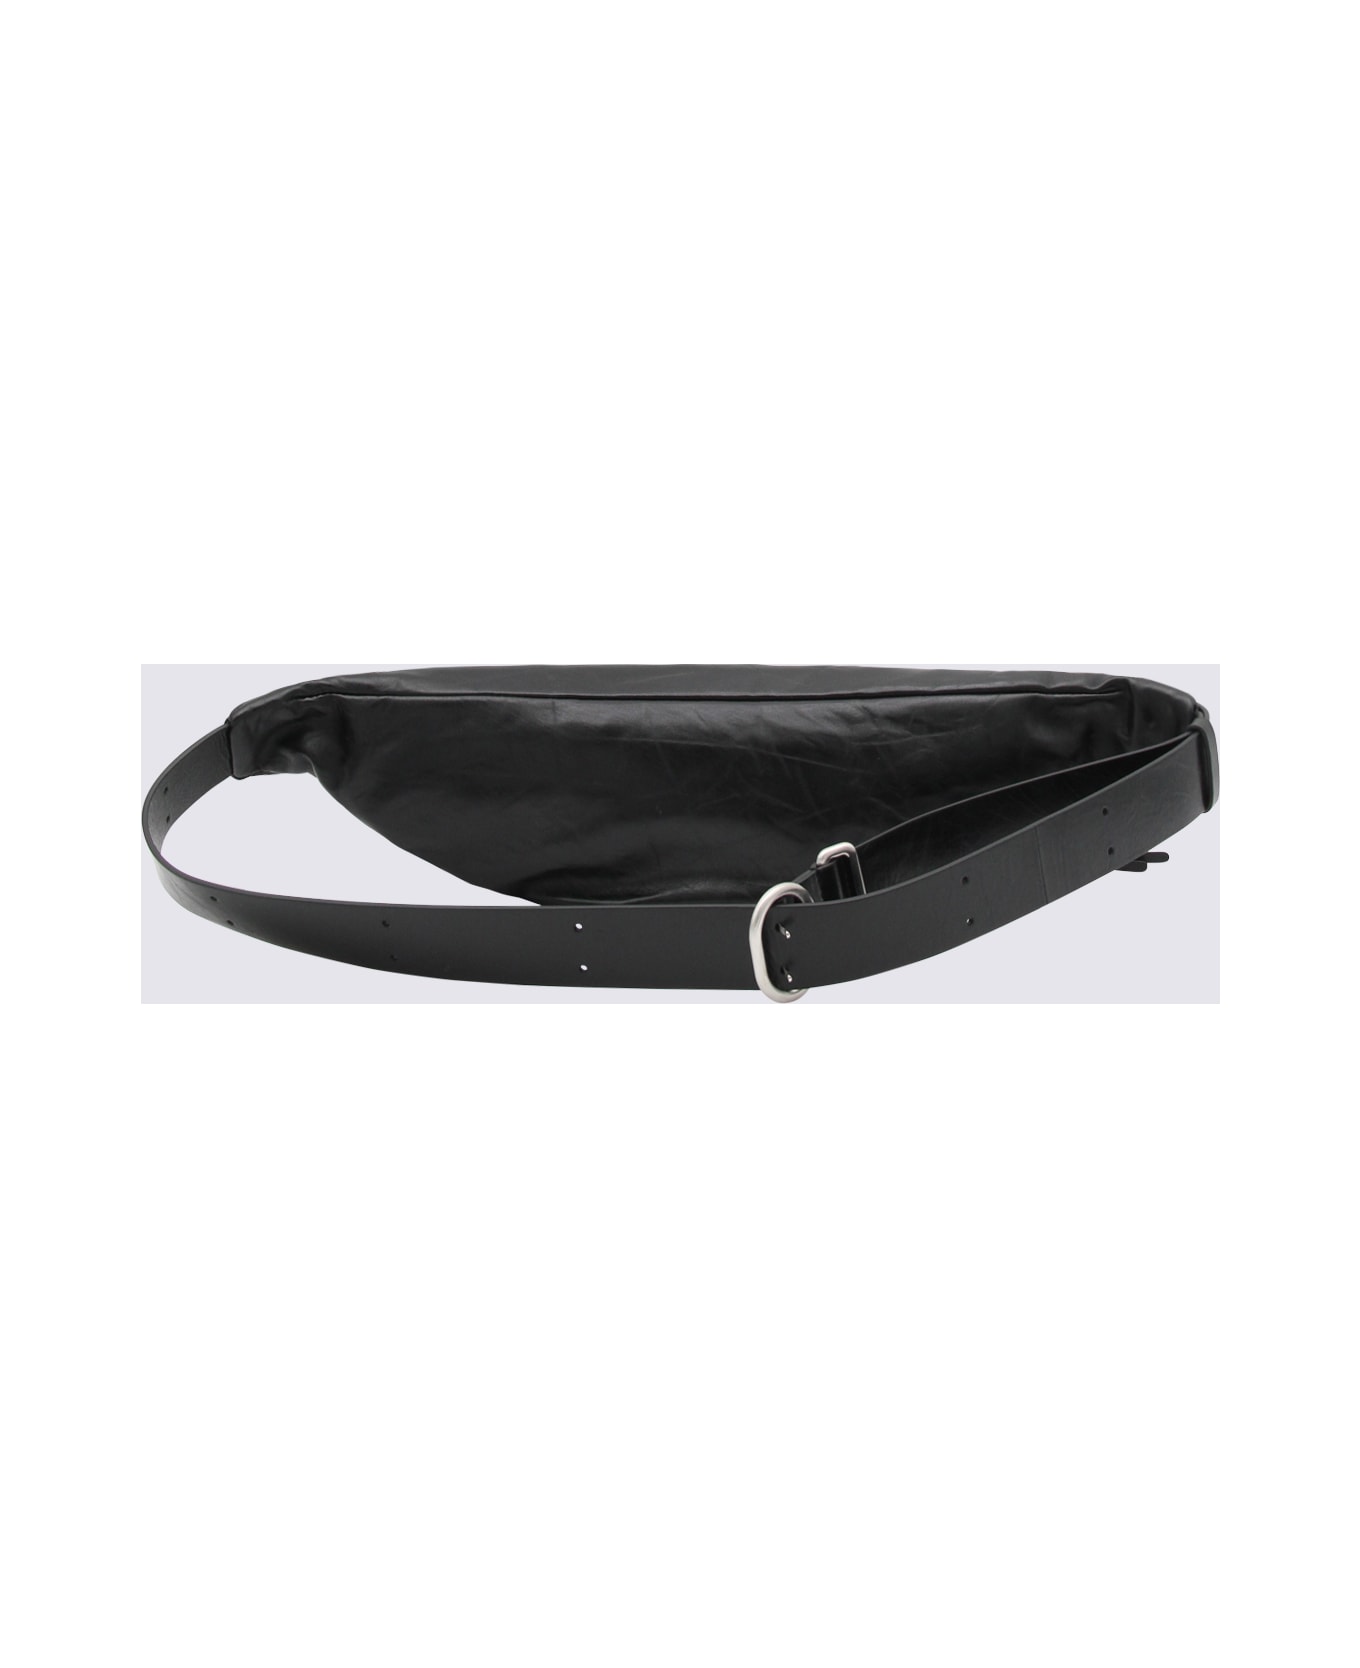 Jil Sander Black Leather Banana Belt Bag - Black